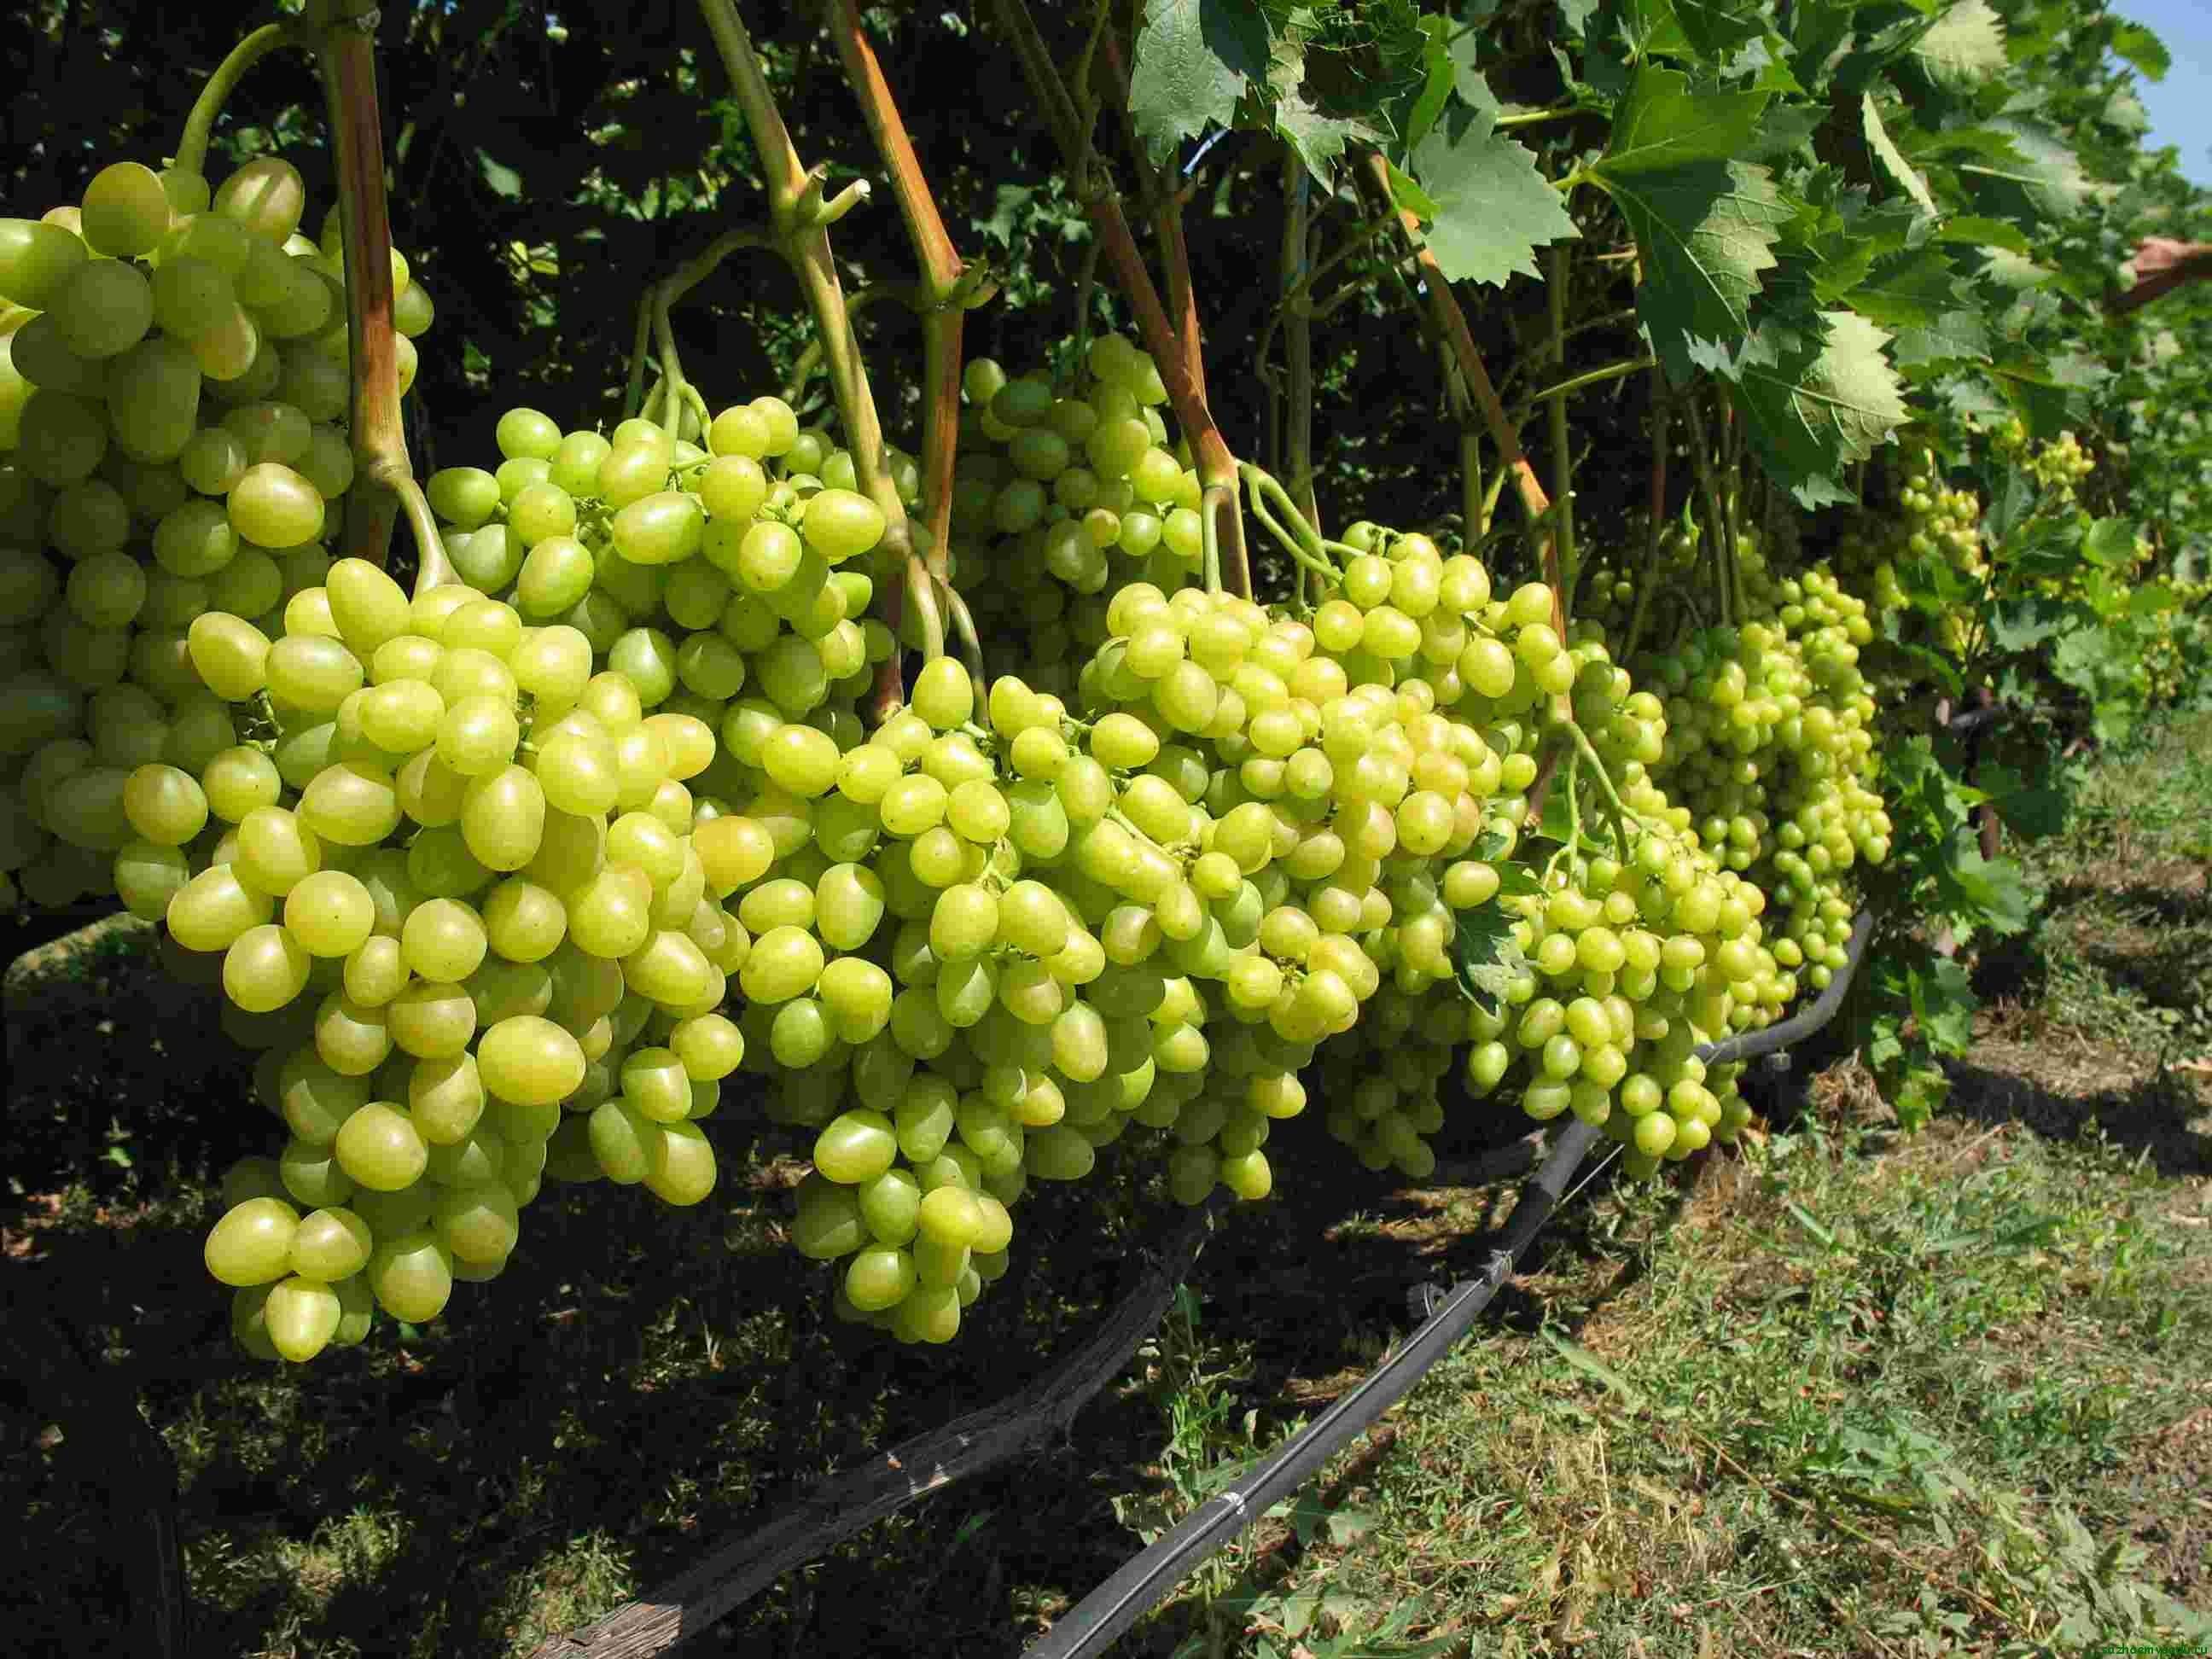 Подкормка винограда осенью: органическая и минеральная, когда проводить